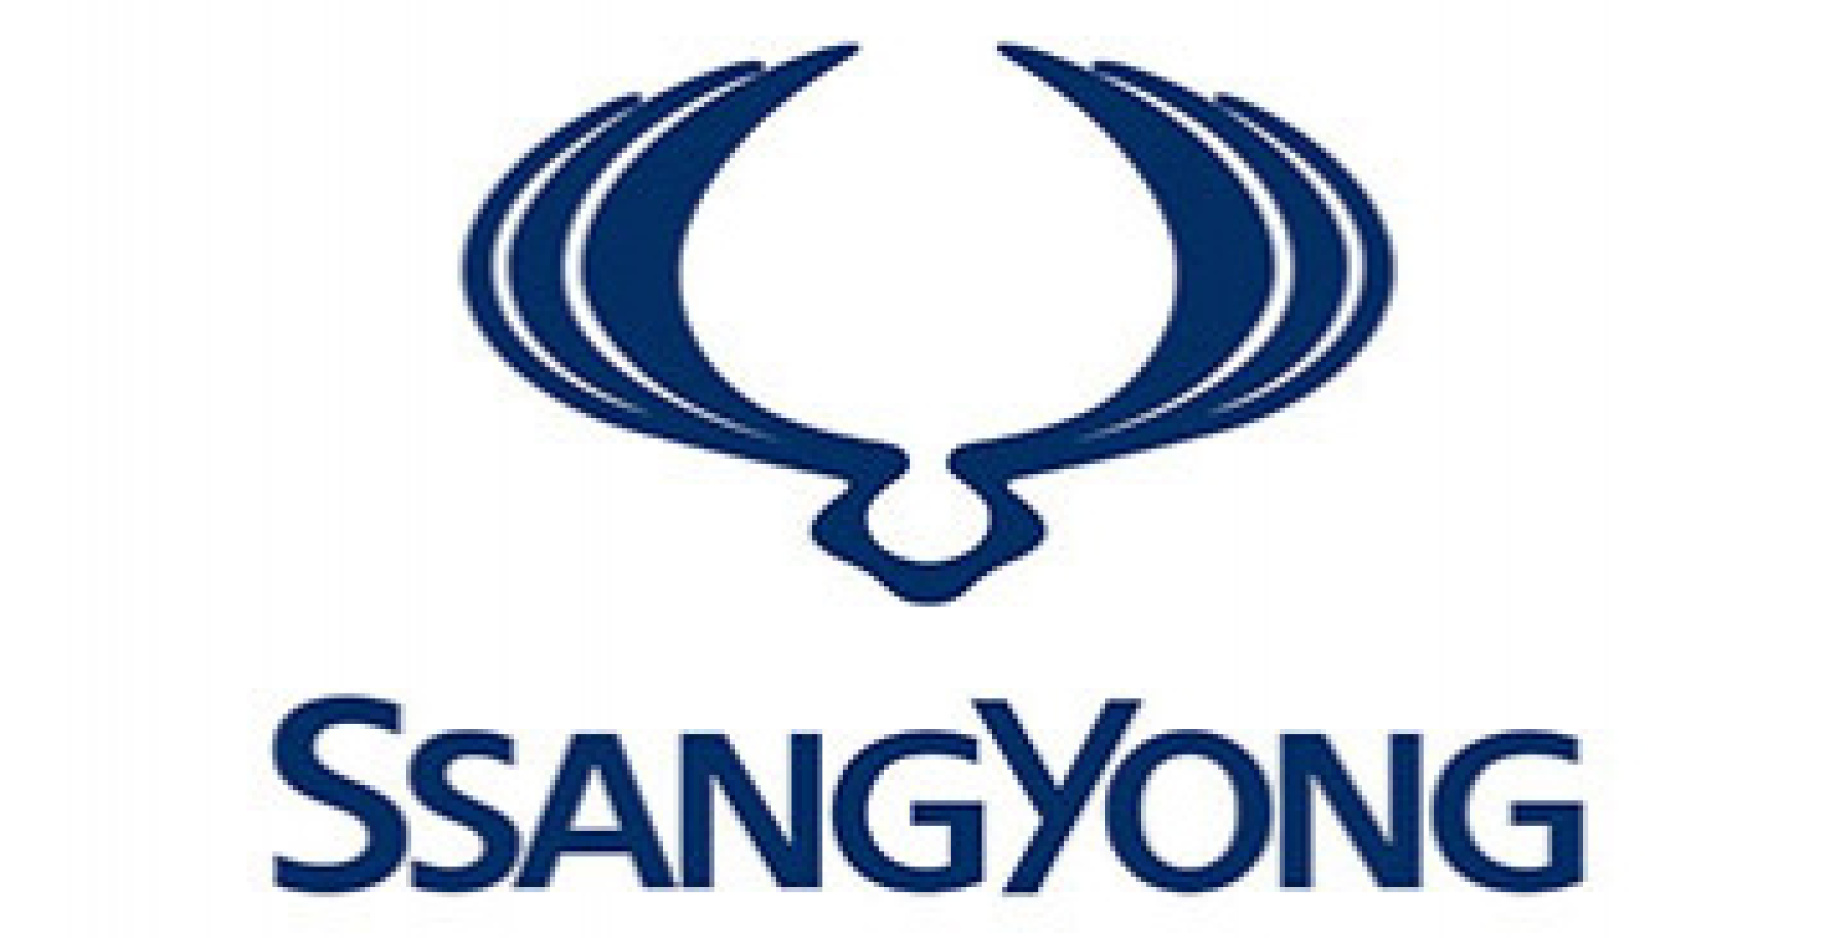 SsangYong poskočil za rok 2022 celkově na 16. místo v počtu registrací nových vozů. V kategorii registrací soukromých zákazníků dosáhla značka SsangYong dokonce až na 7. místo.